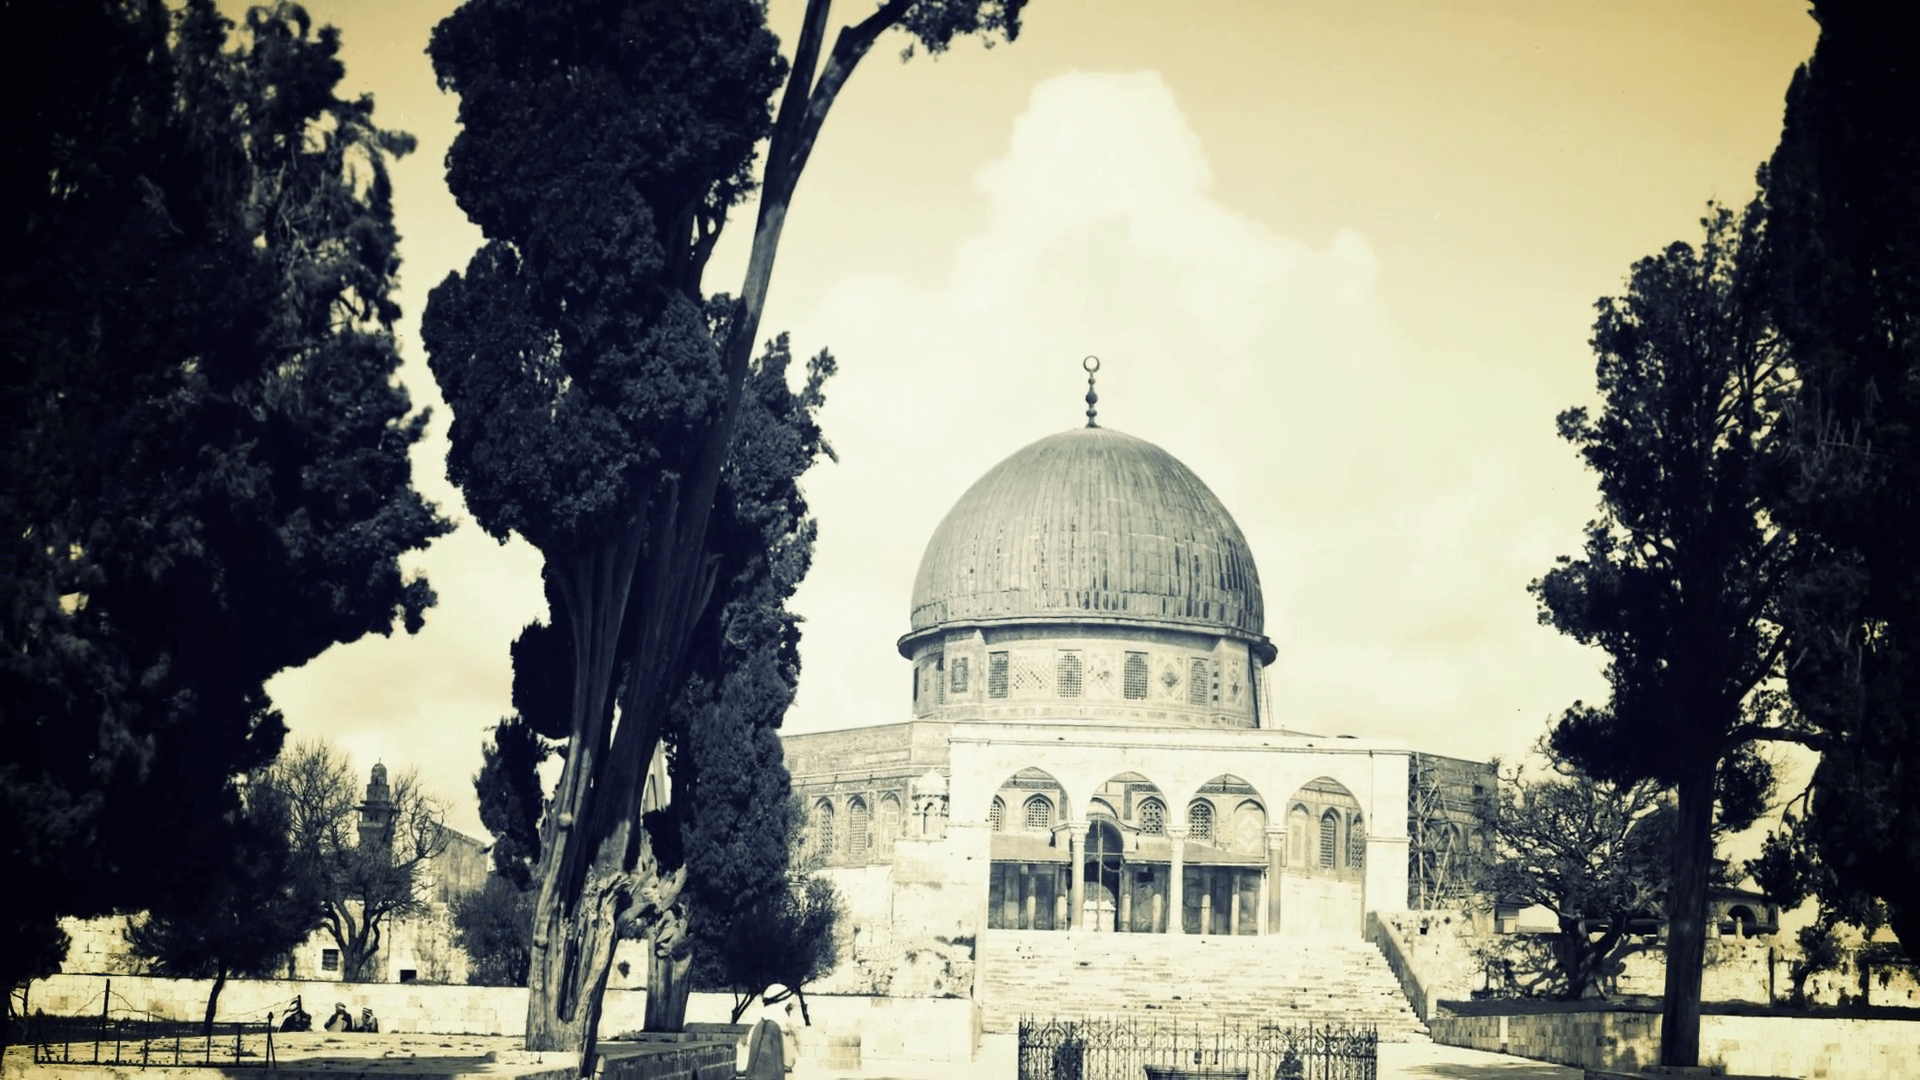 The Al Aqsa Mosque HD Wallpapers.